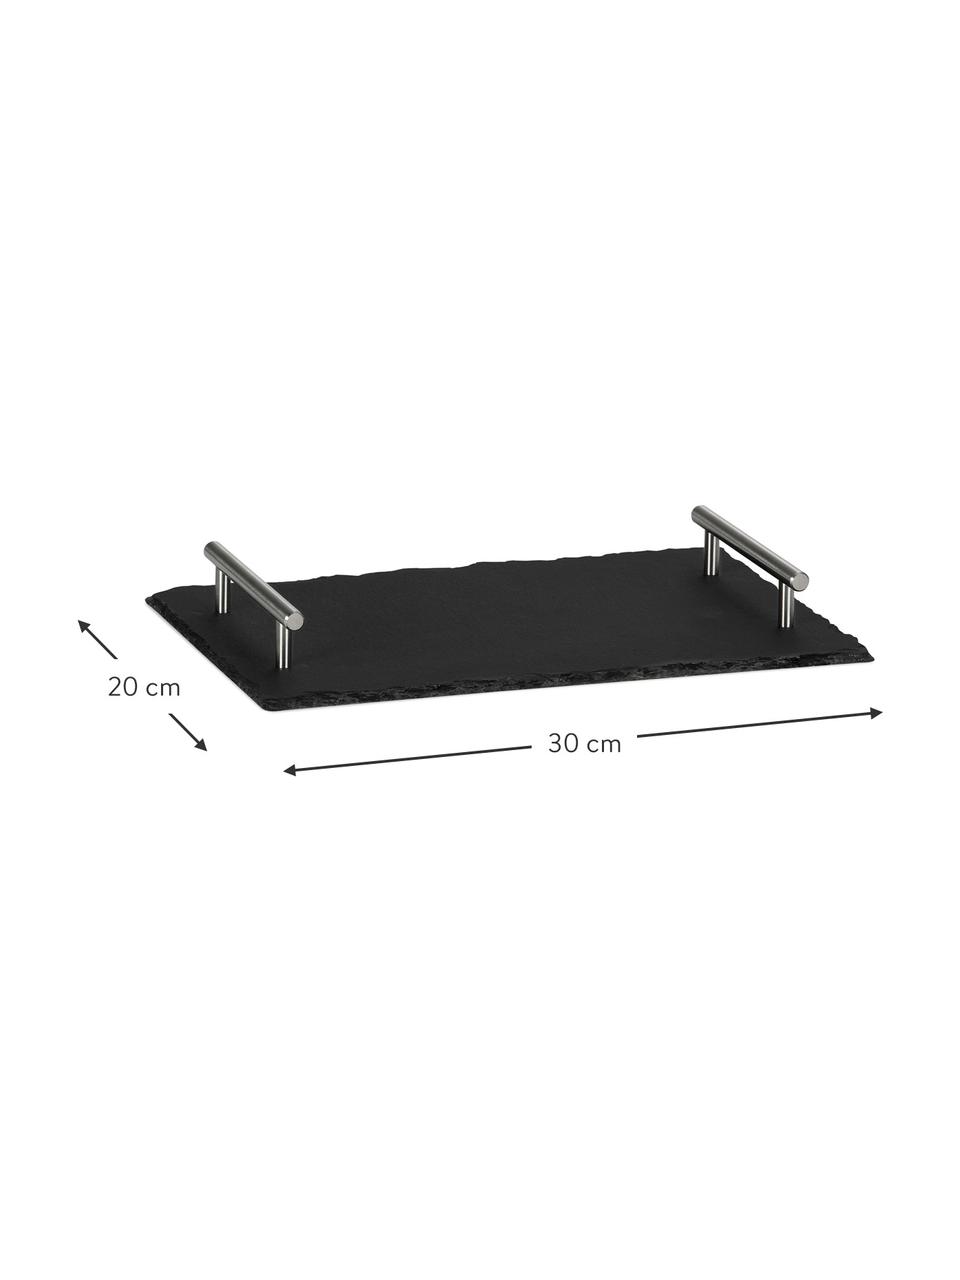 Dienblad Slate in zwart, L 30 x B 20 cm, Dienblad: leisteen, Handvatten: edelstaal, Zwart, zilverkleurig, L 30 x B 20 cm